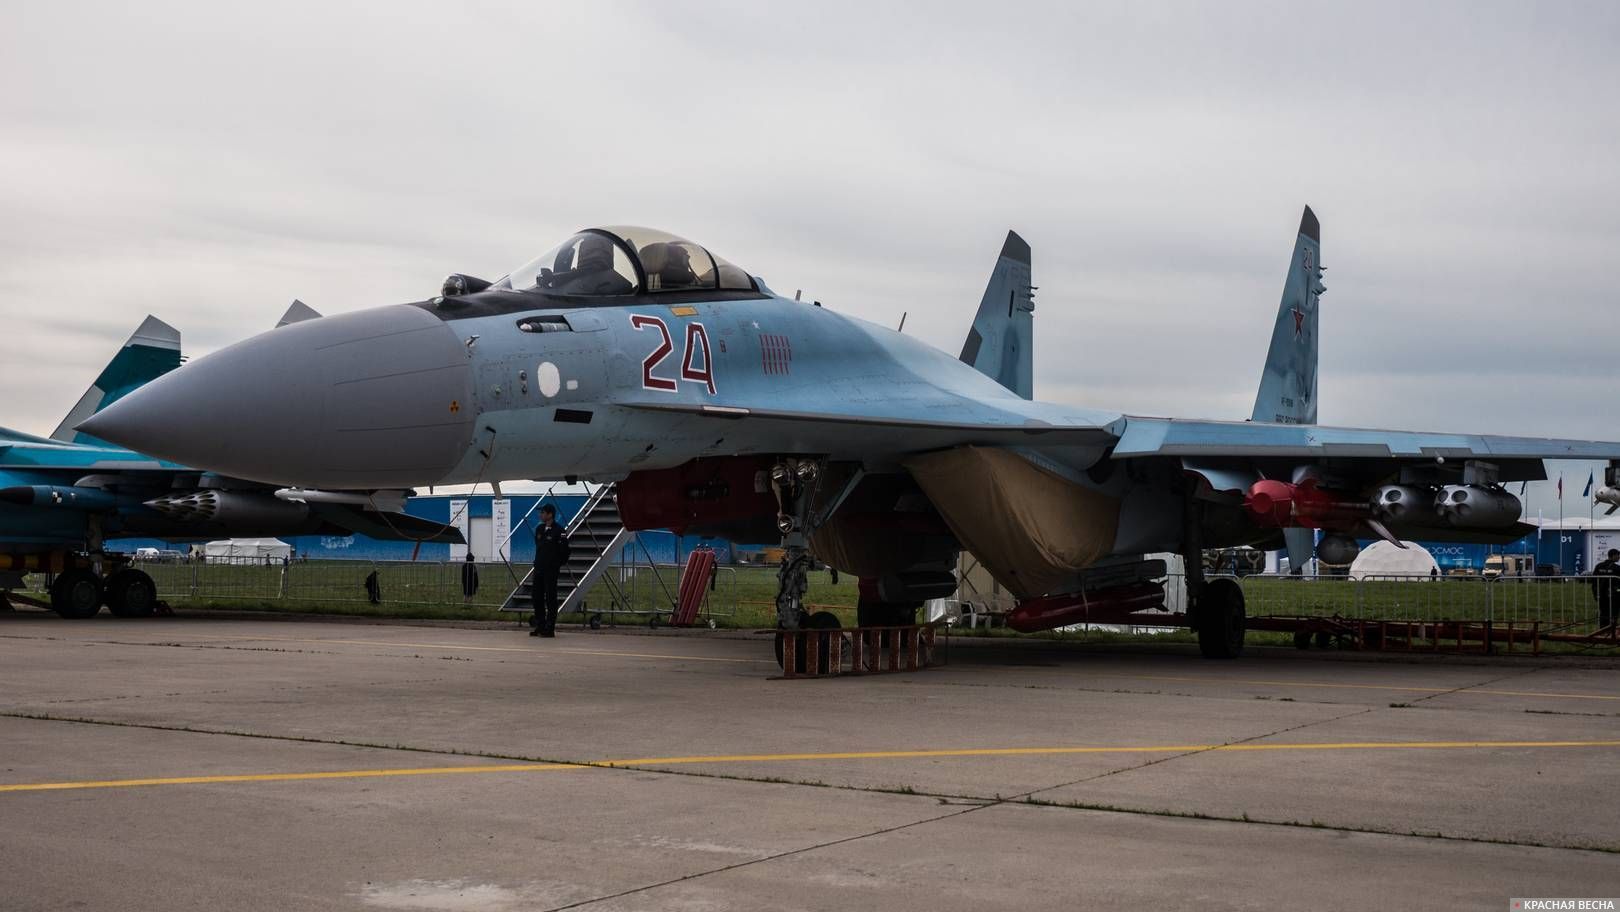 Сверхманевренный истребитель Су-35. МАКС Раменское. 22.07.2017